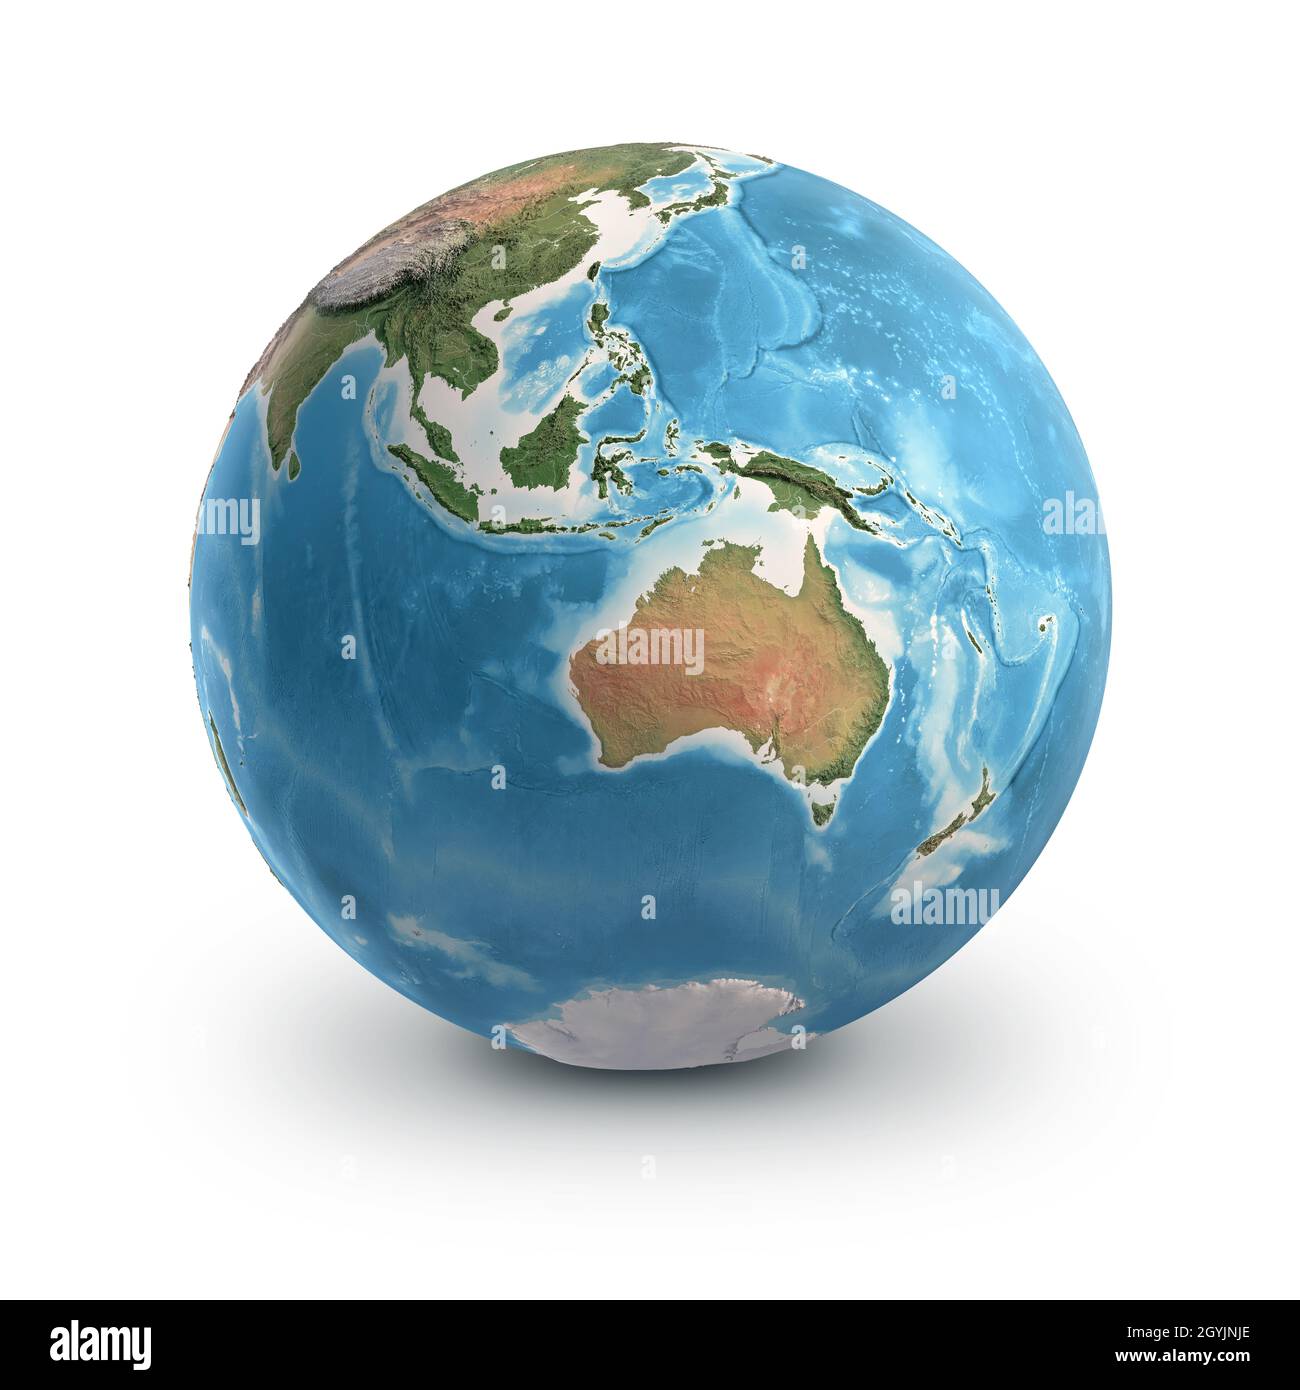 Planète Terre globe, isolée sur blanc. Géographie du monde de l'espace, axé sur l'Australie et l'Asie du Sud-est. Éléments fournis par la NASA Banque D'Images